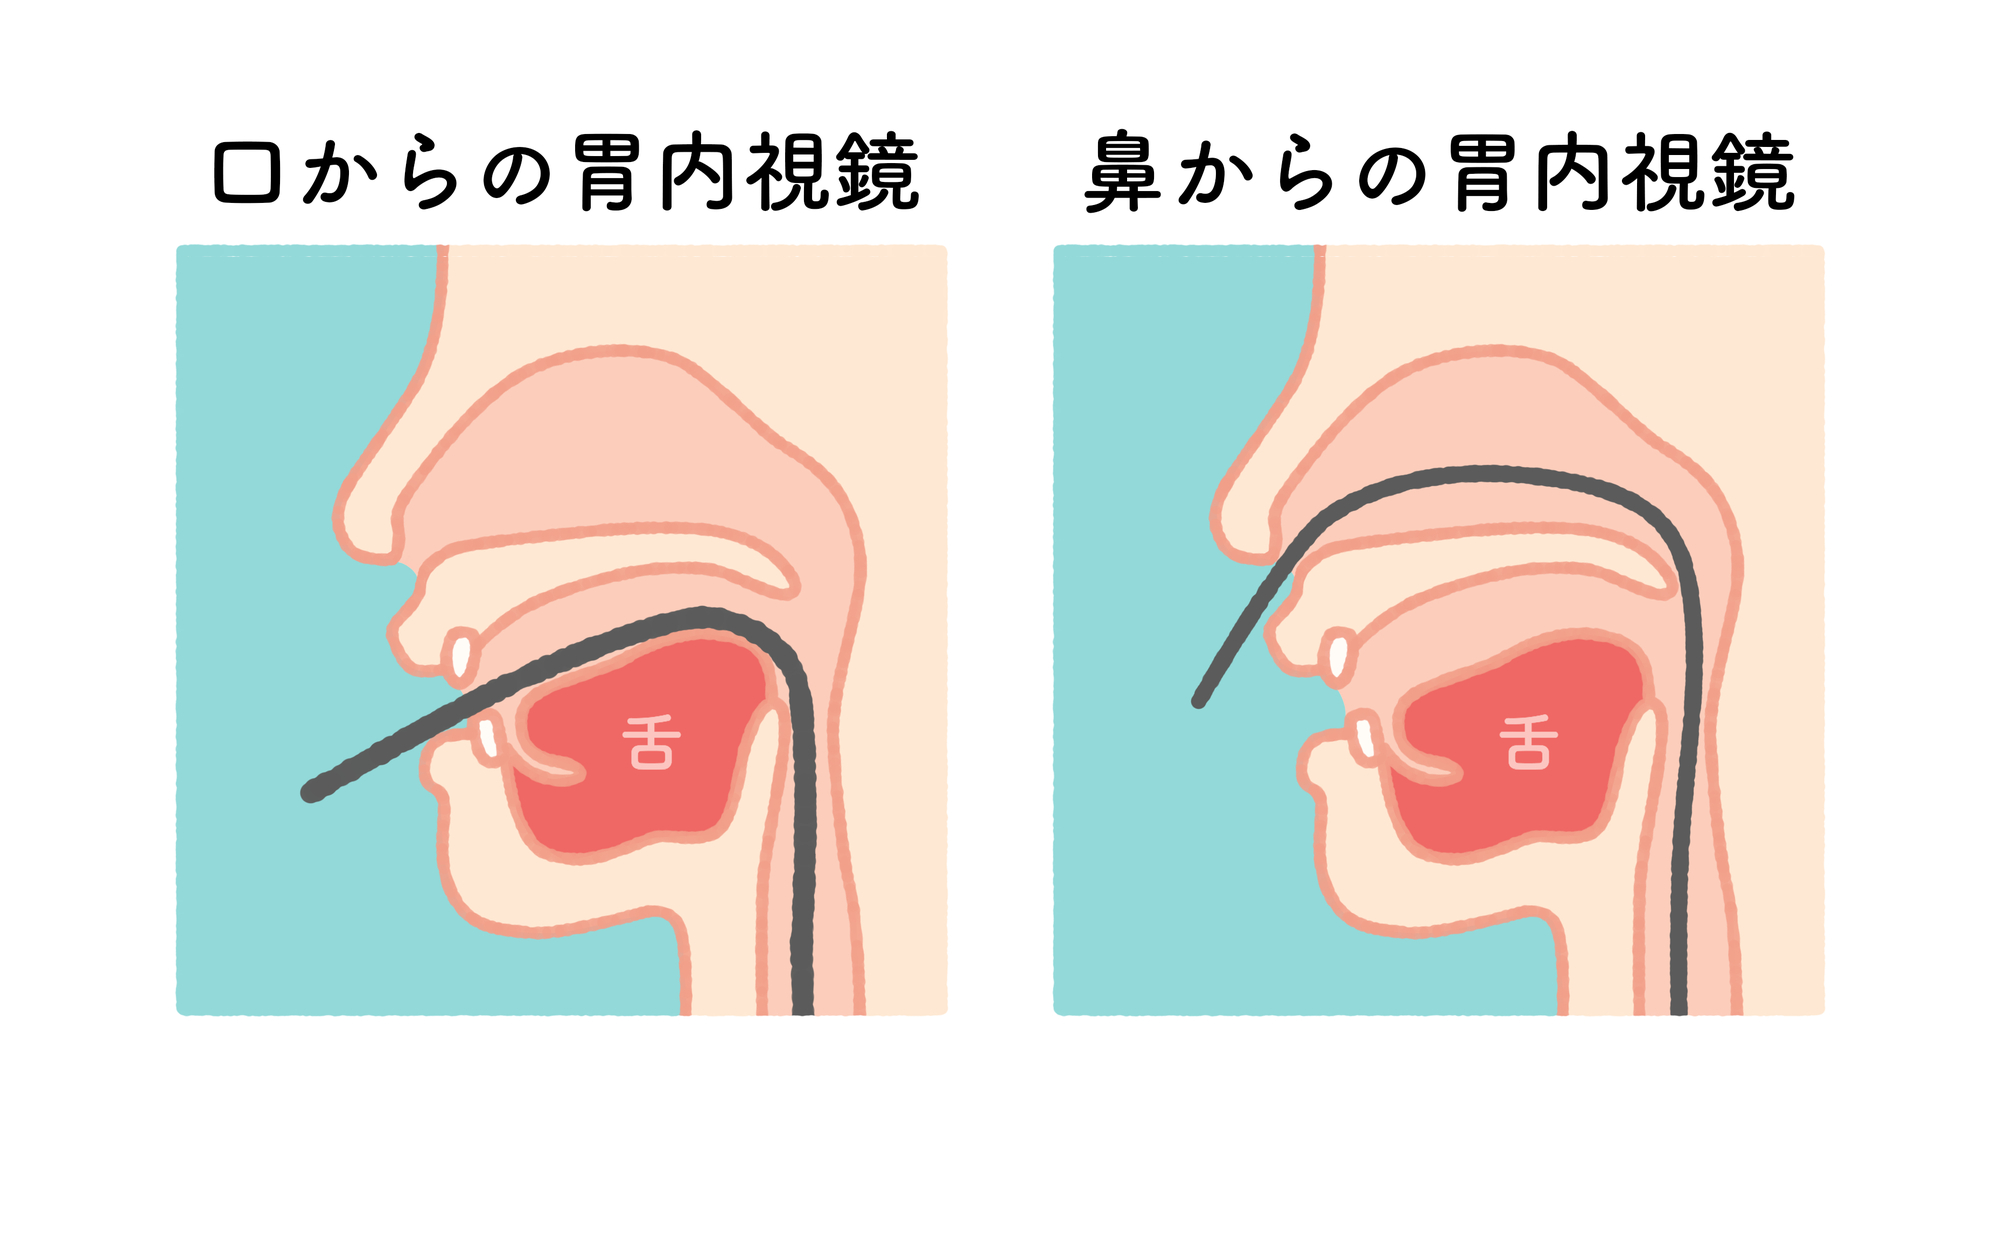 経鼻･経口から選べる胃カメラ